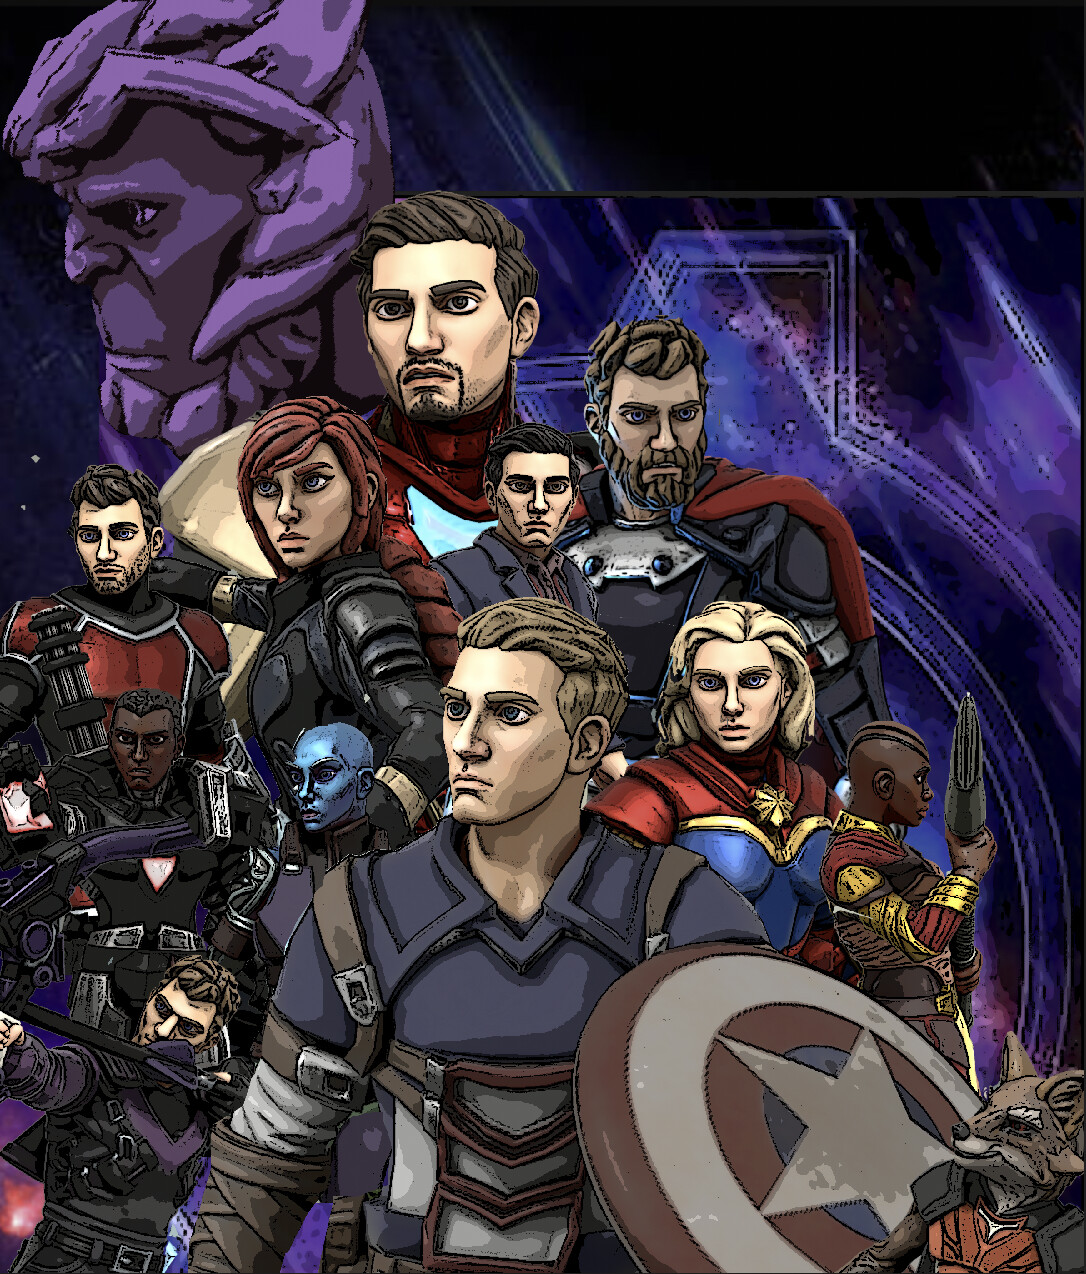 ArtStation - Avengers: End Game